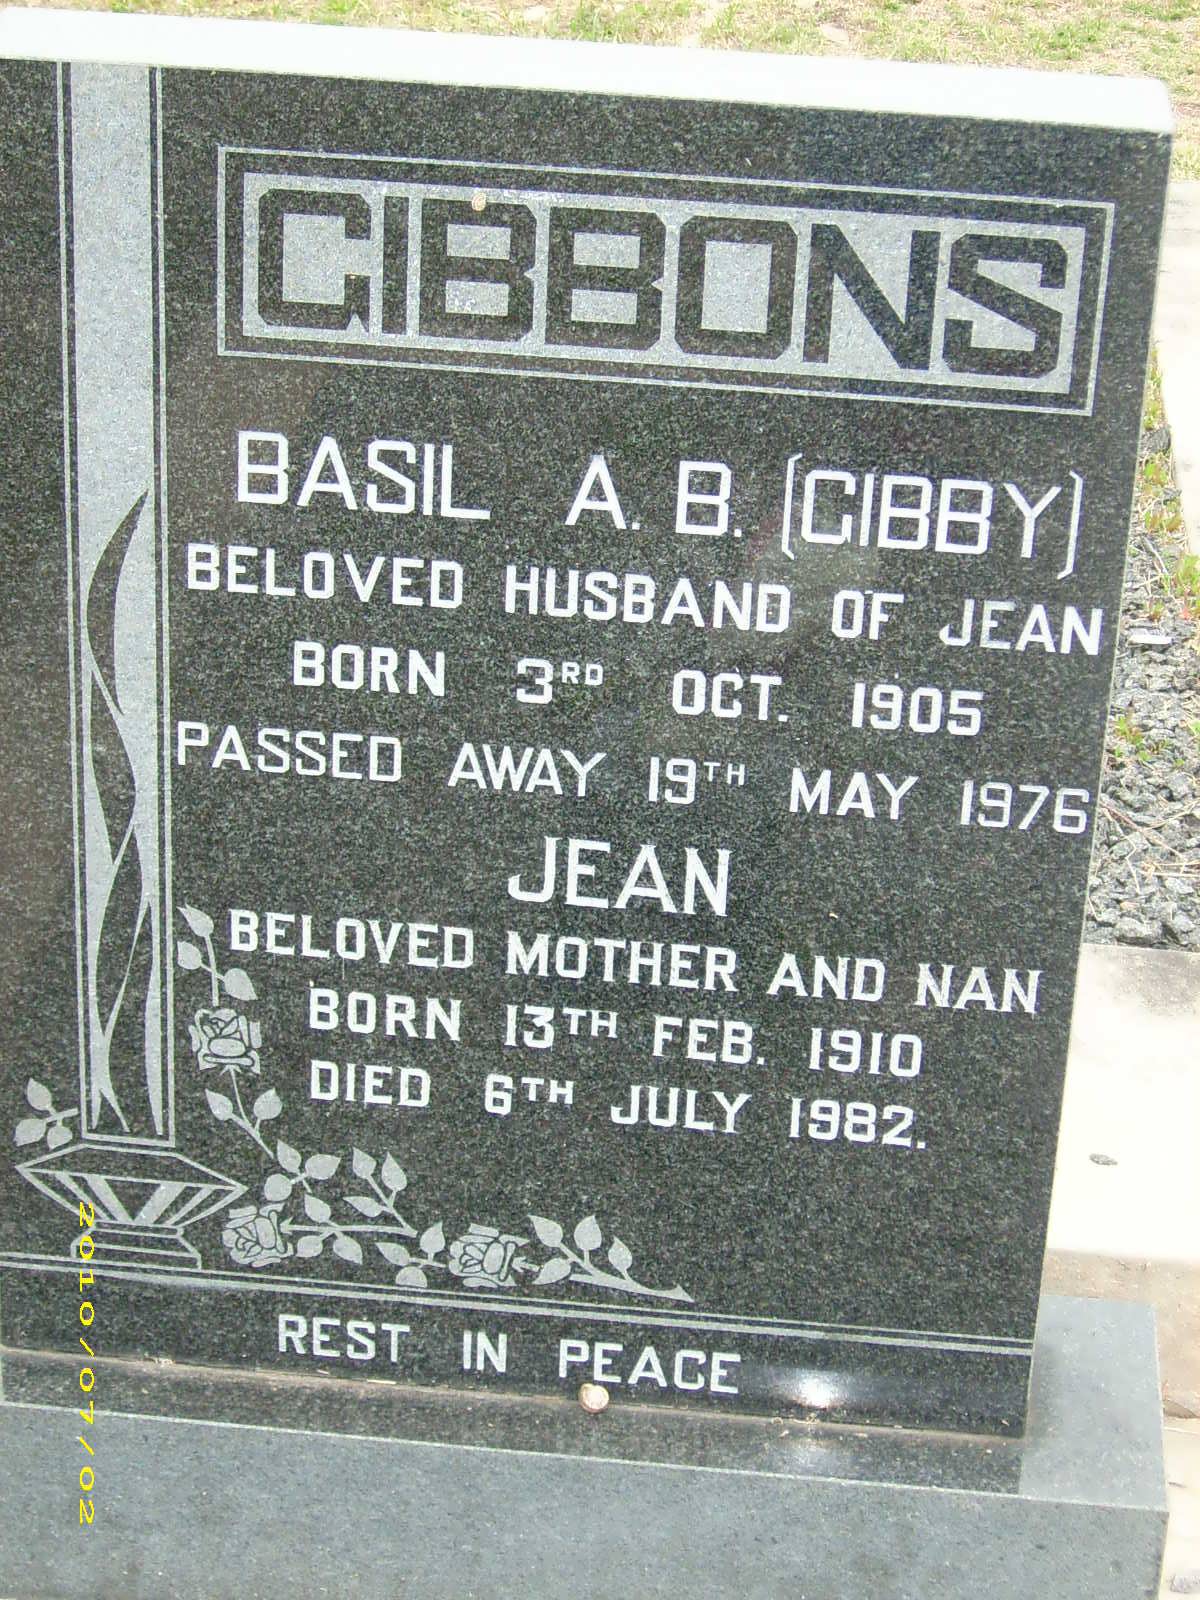 GIBBONS Basil A.B. 1905-1976 & Jean 1910-1982